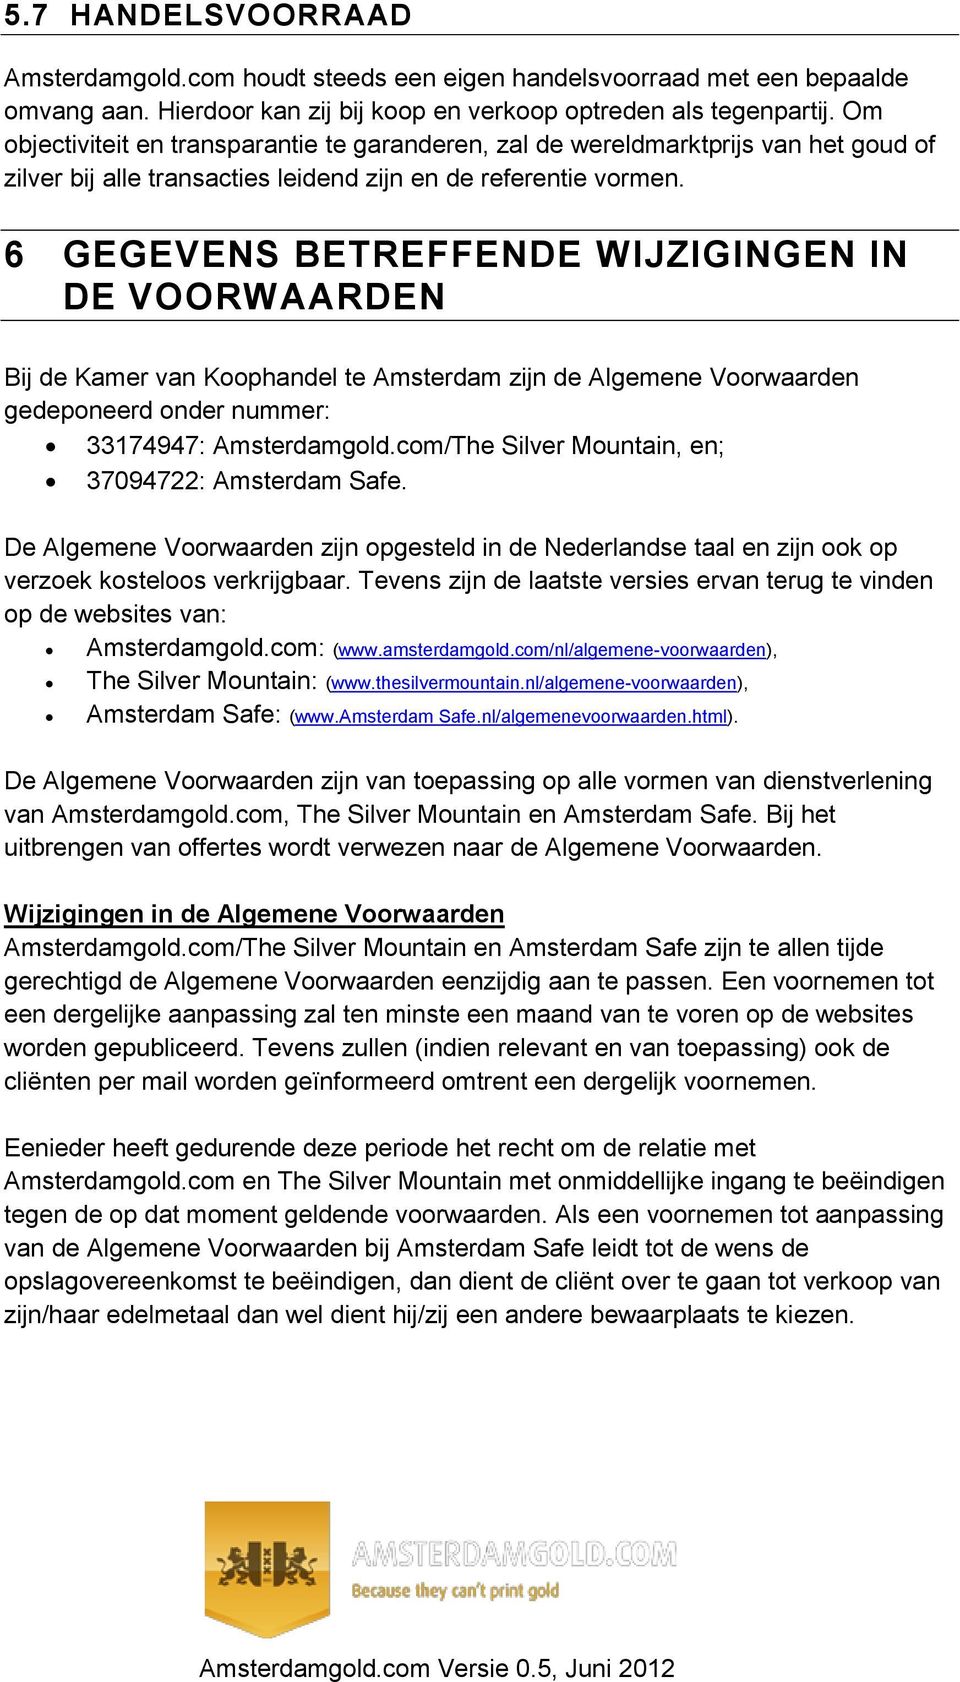 6 GEGEVENS BETREFFENDE WIJZIGINGEN IN DE VOORWAARDEN Bij de Kamer van Koophandel te Amsterdam zijn de Algemene Voorwaarden gedeponeerd onder nummer: 33174947: Amsterdamgold.